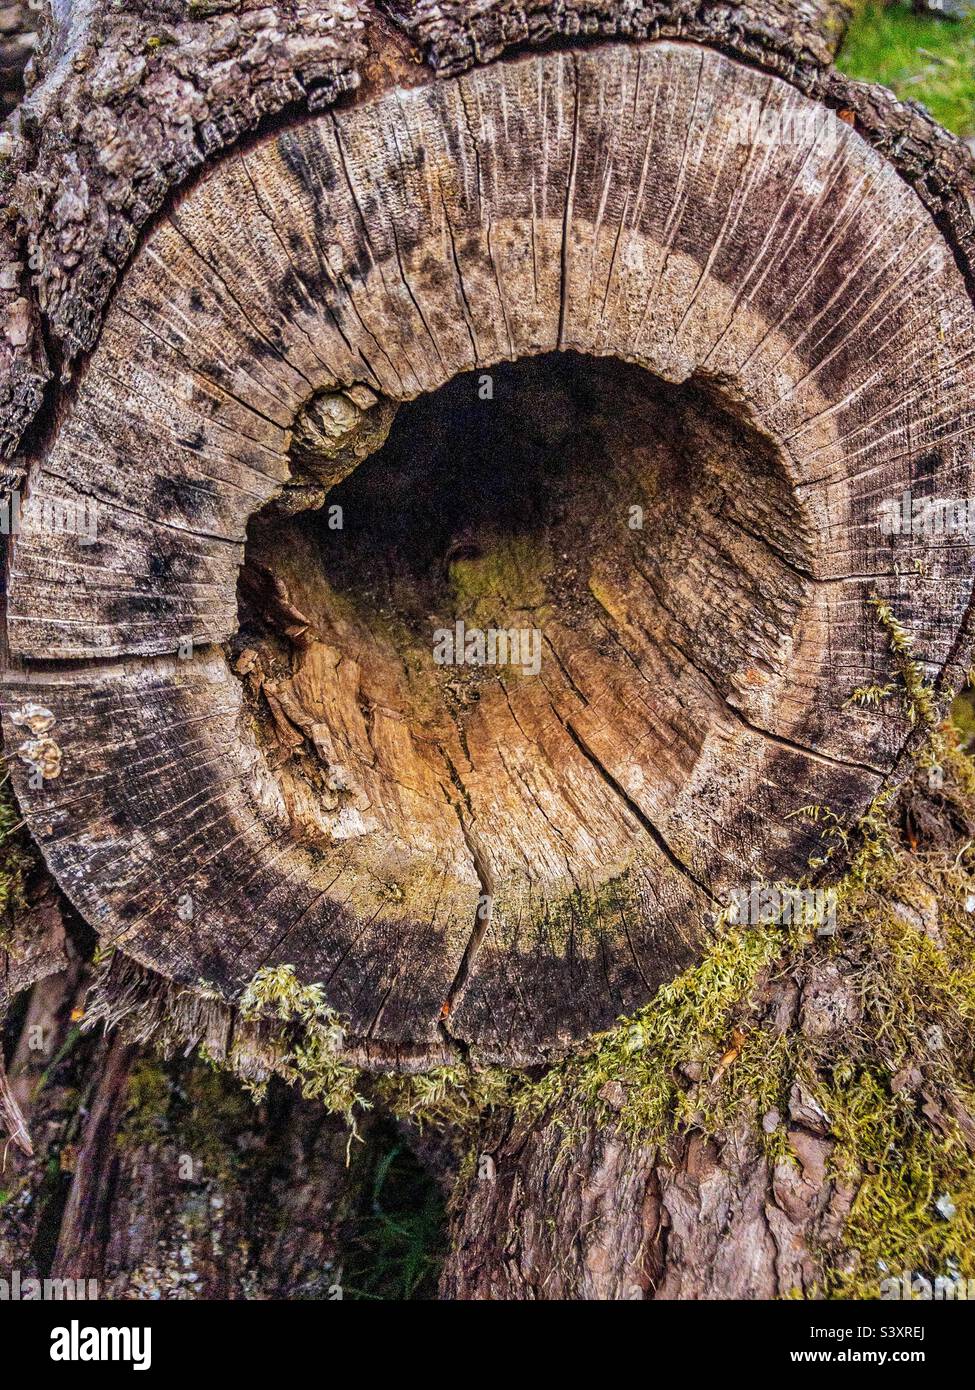 Log in Holz mit verfaulten ausgehöhlten Zentrum, bietet einen Lebensraum für Wildtiere. Stockfoto